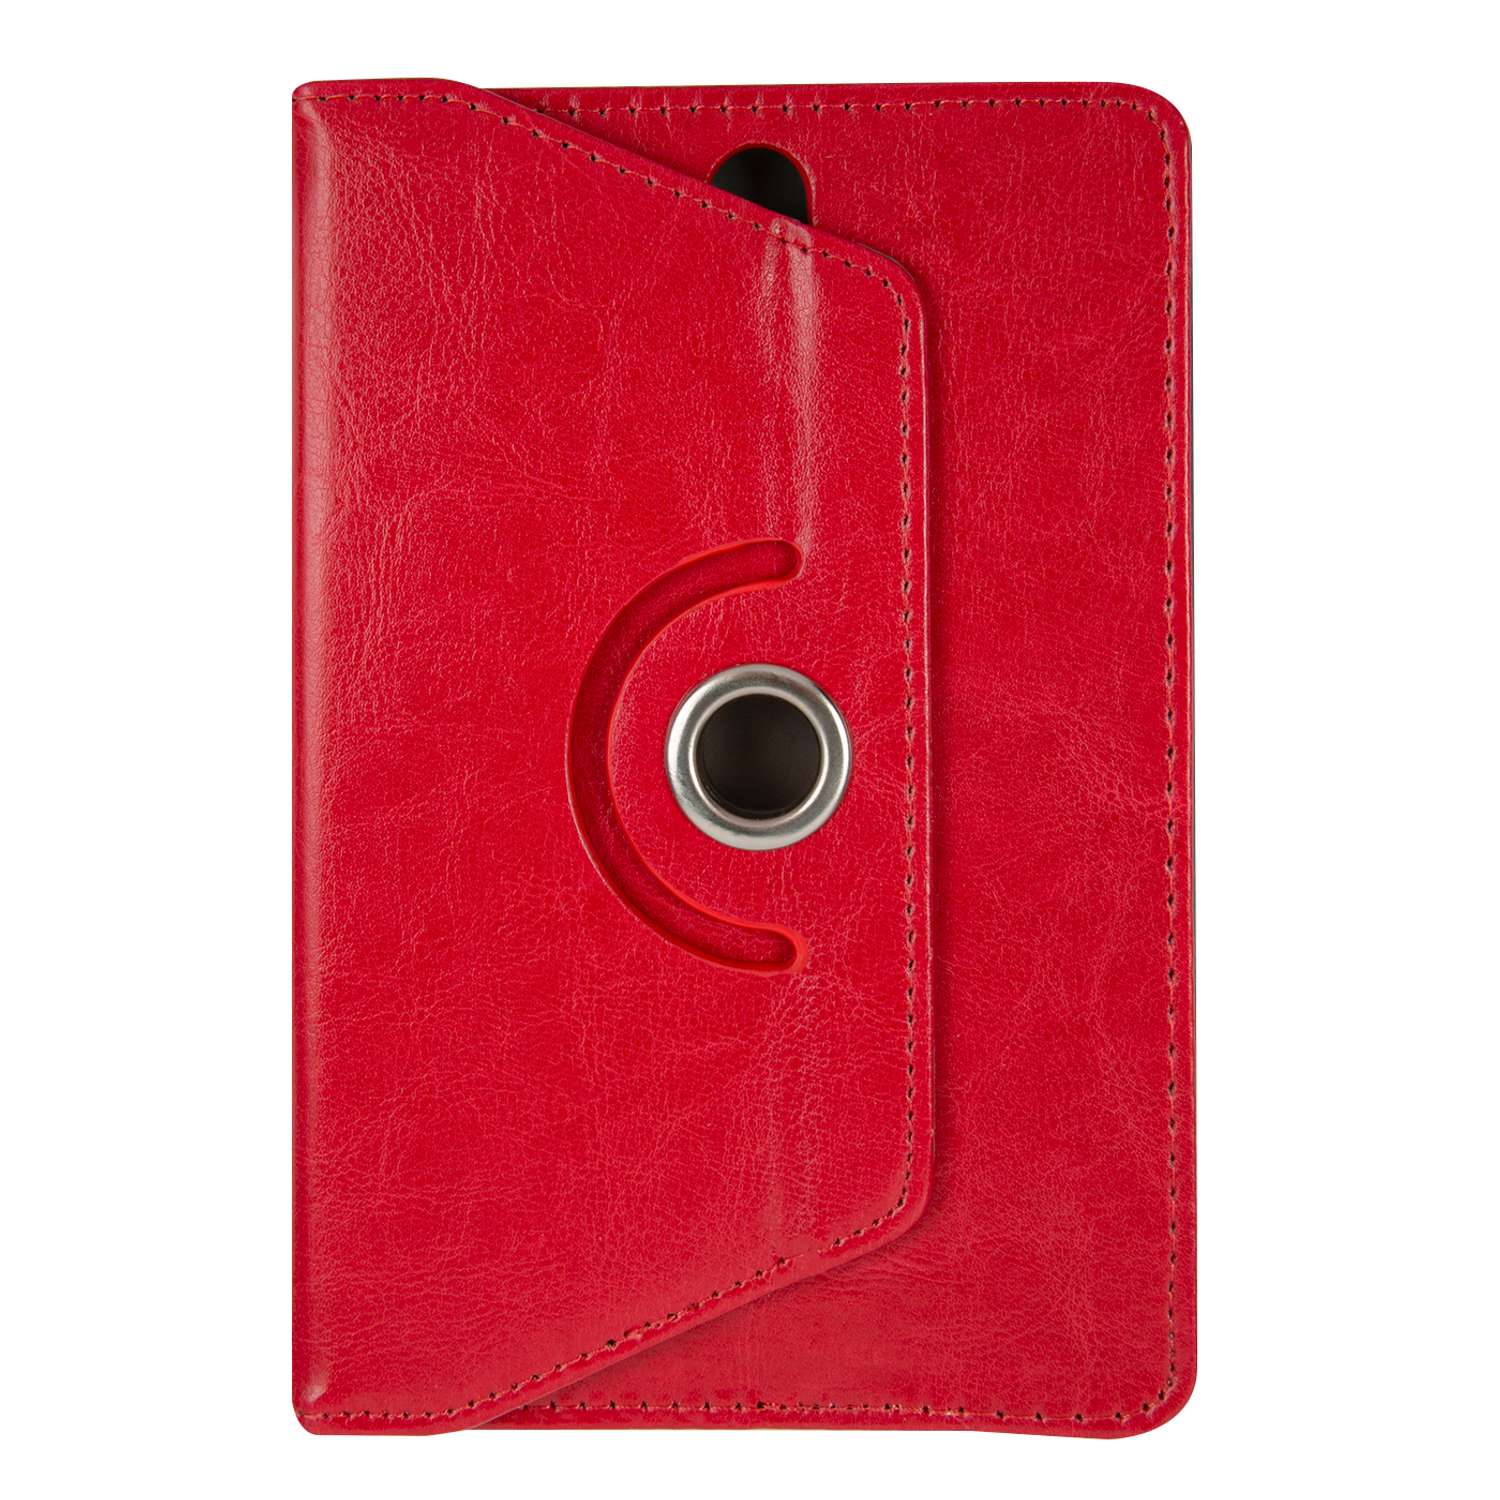 Чехол универсальный iBox для планшетов с поворотным механизмом 7 дюймов красный - фото 1